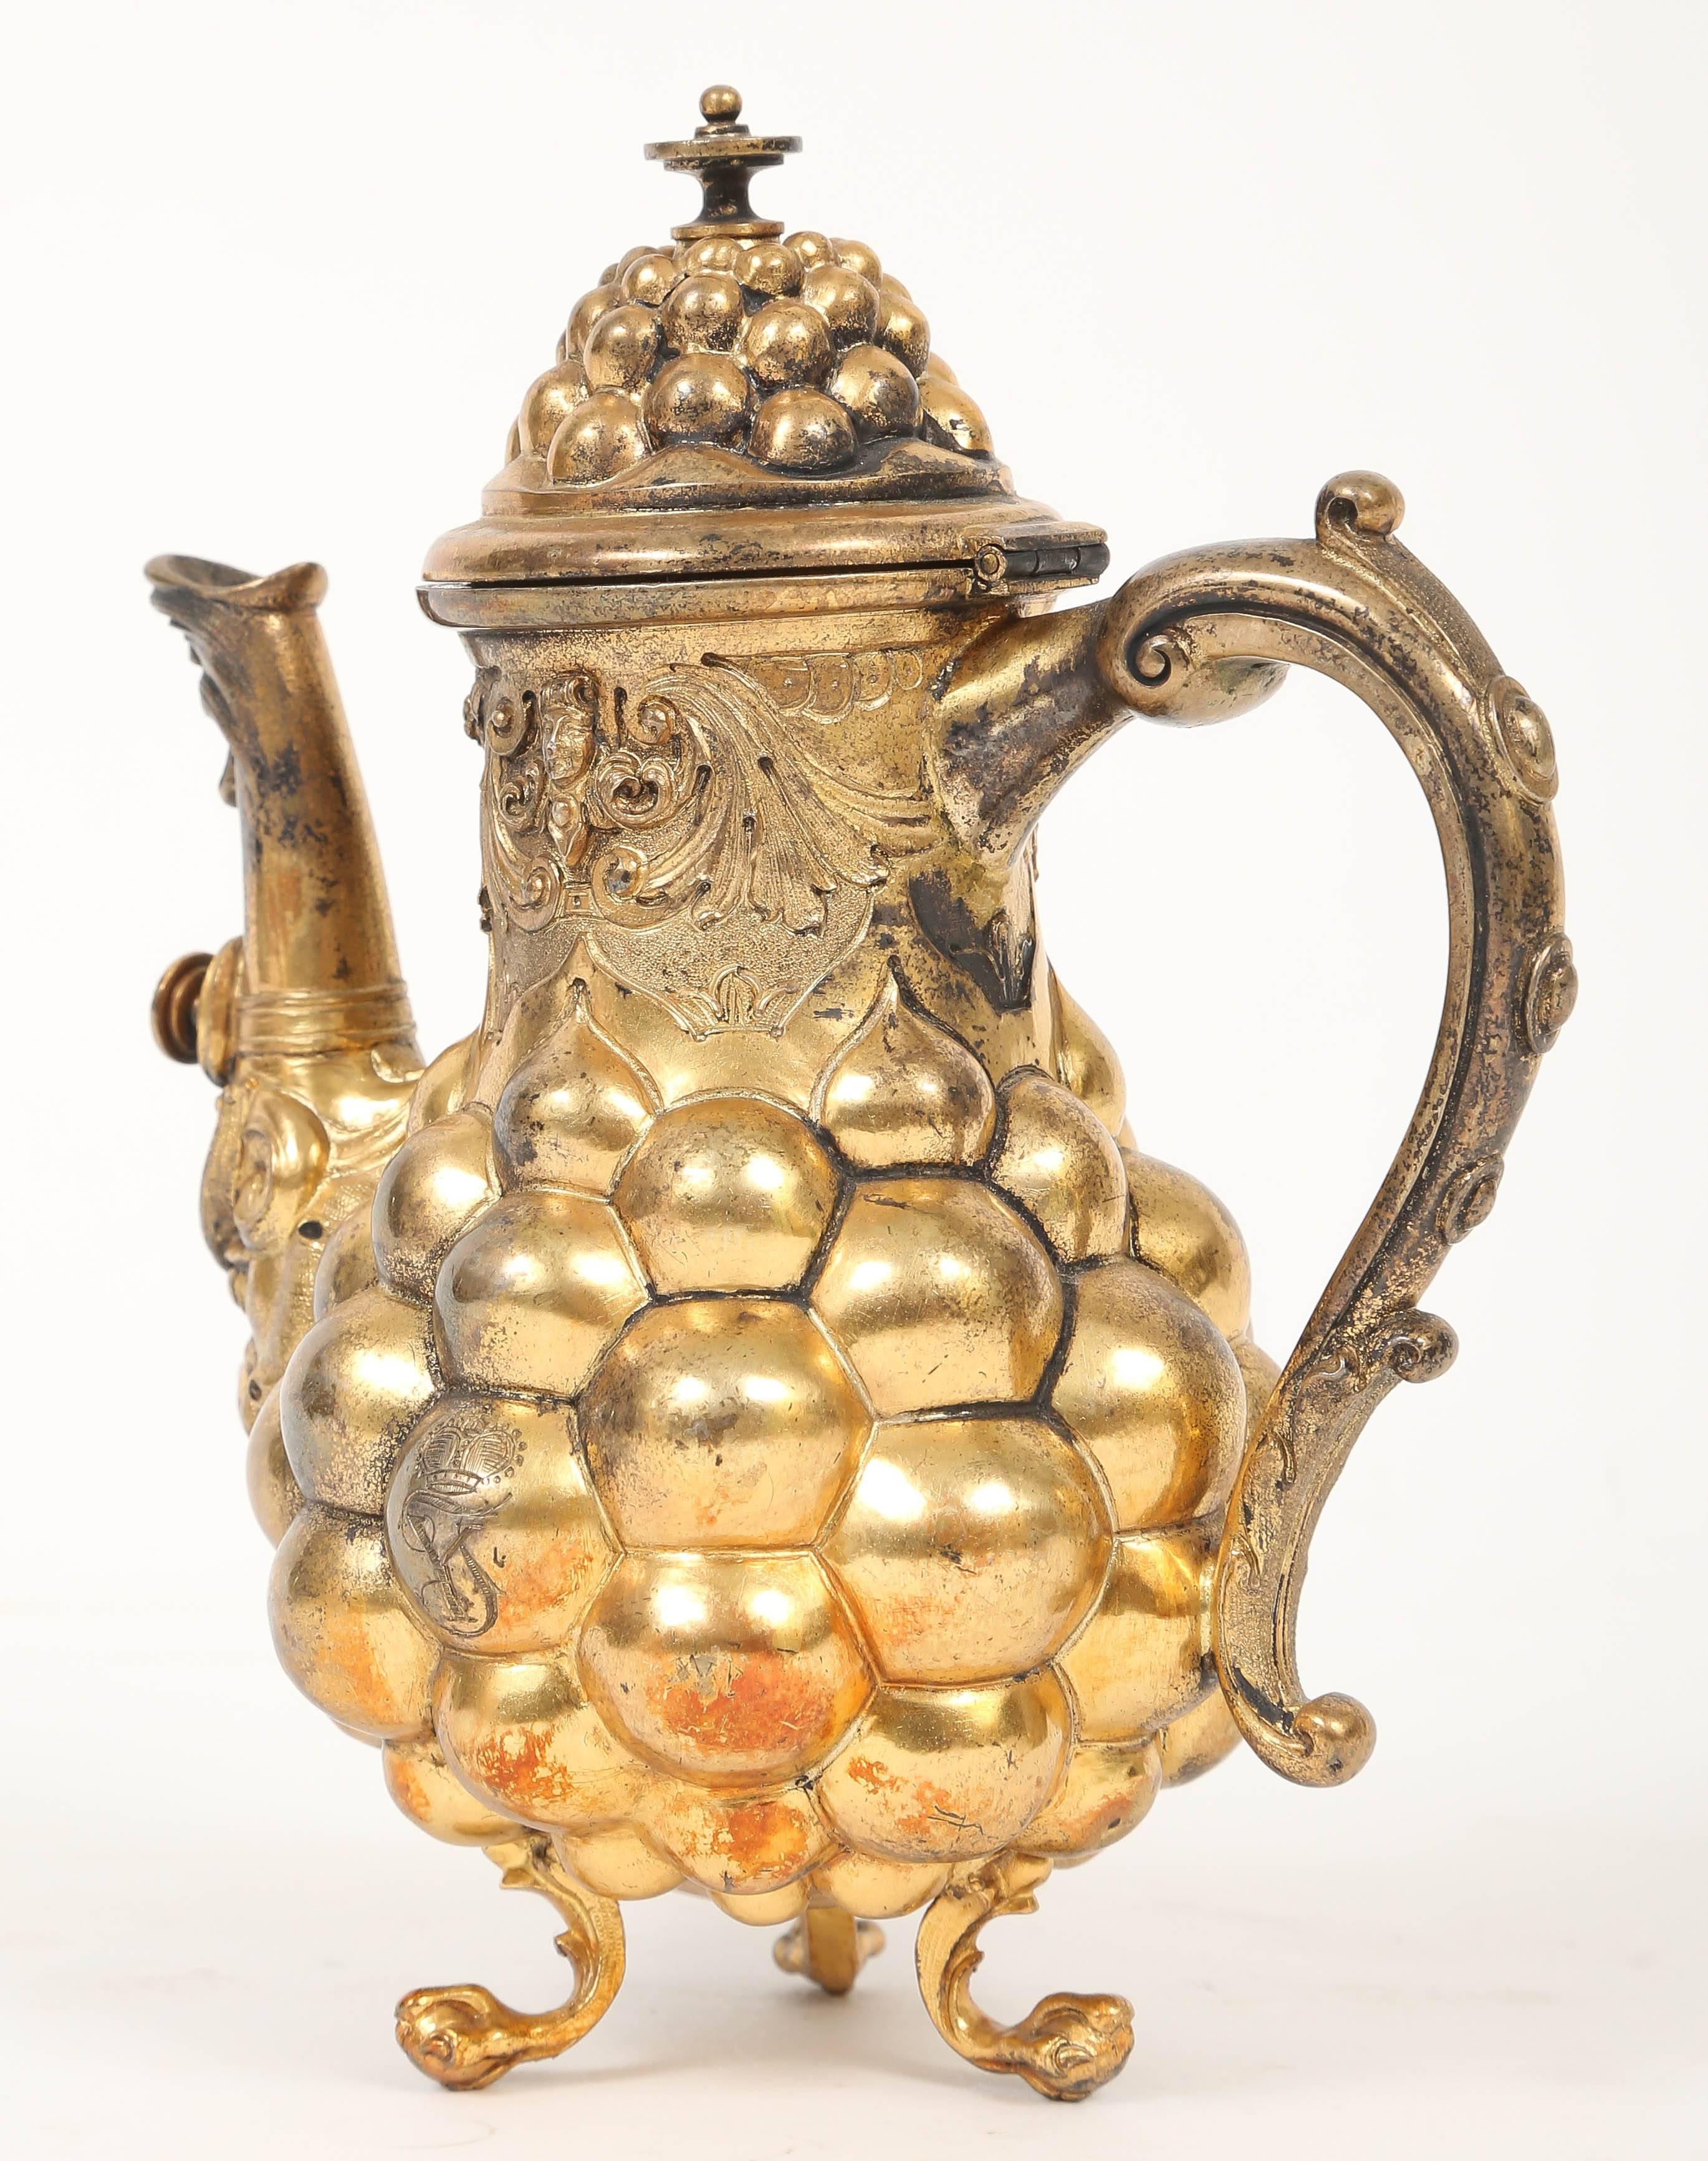 18th century coffee pot